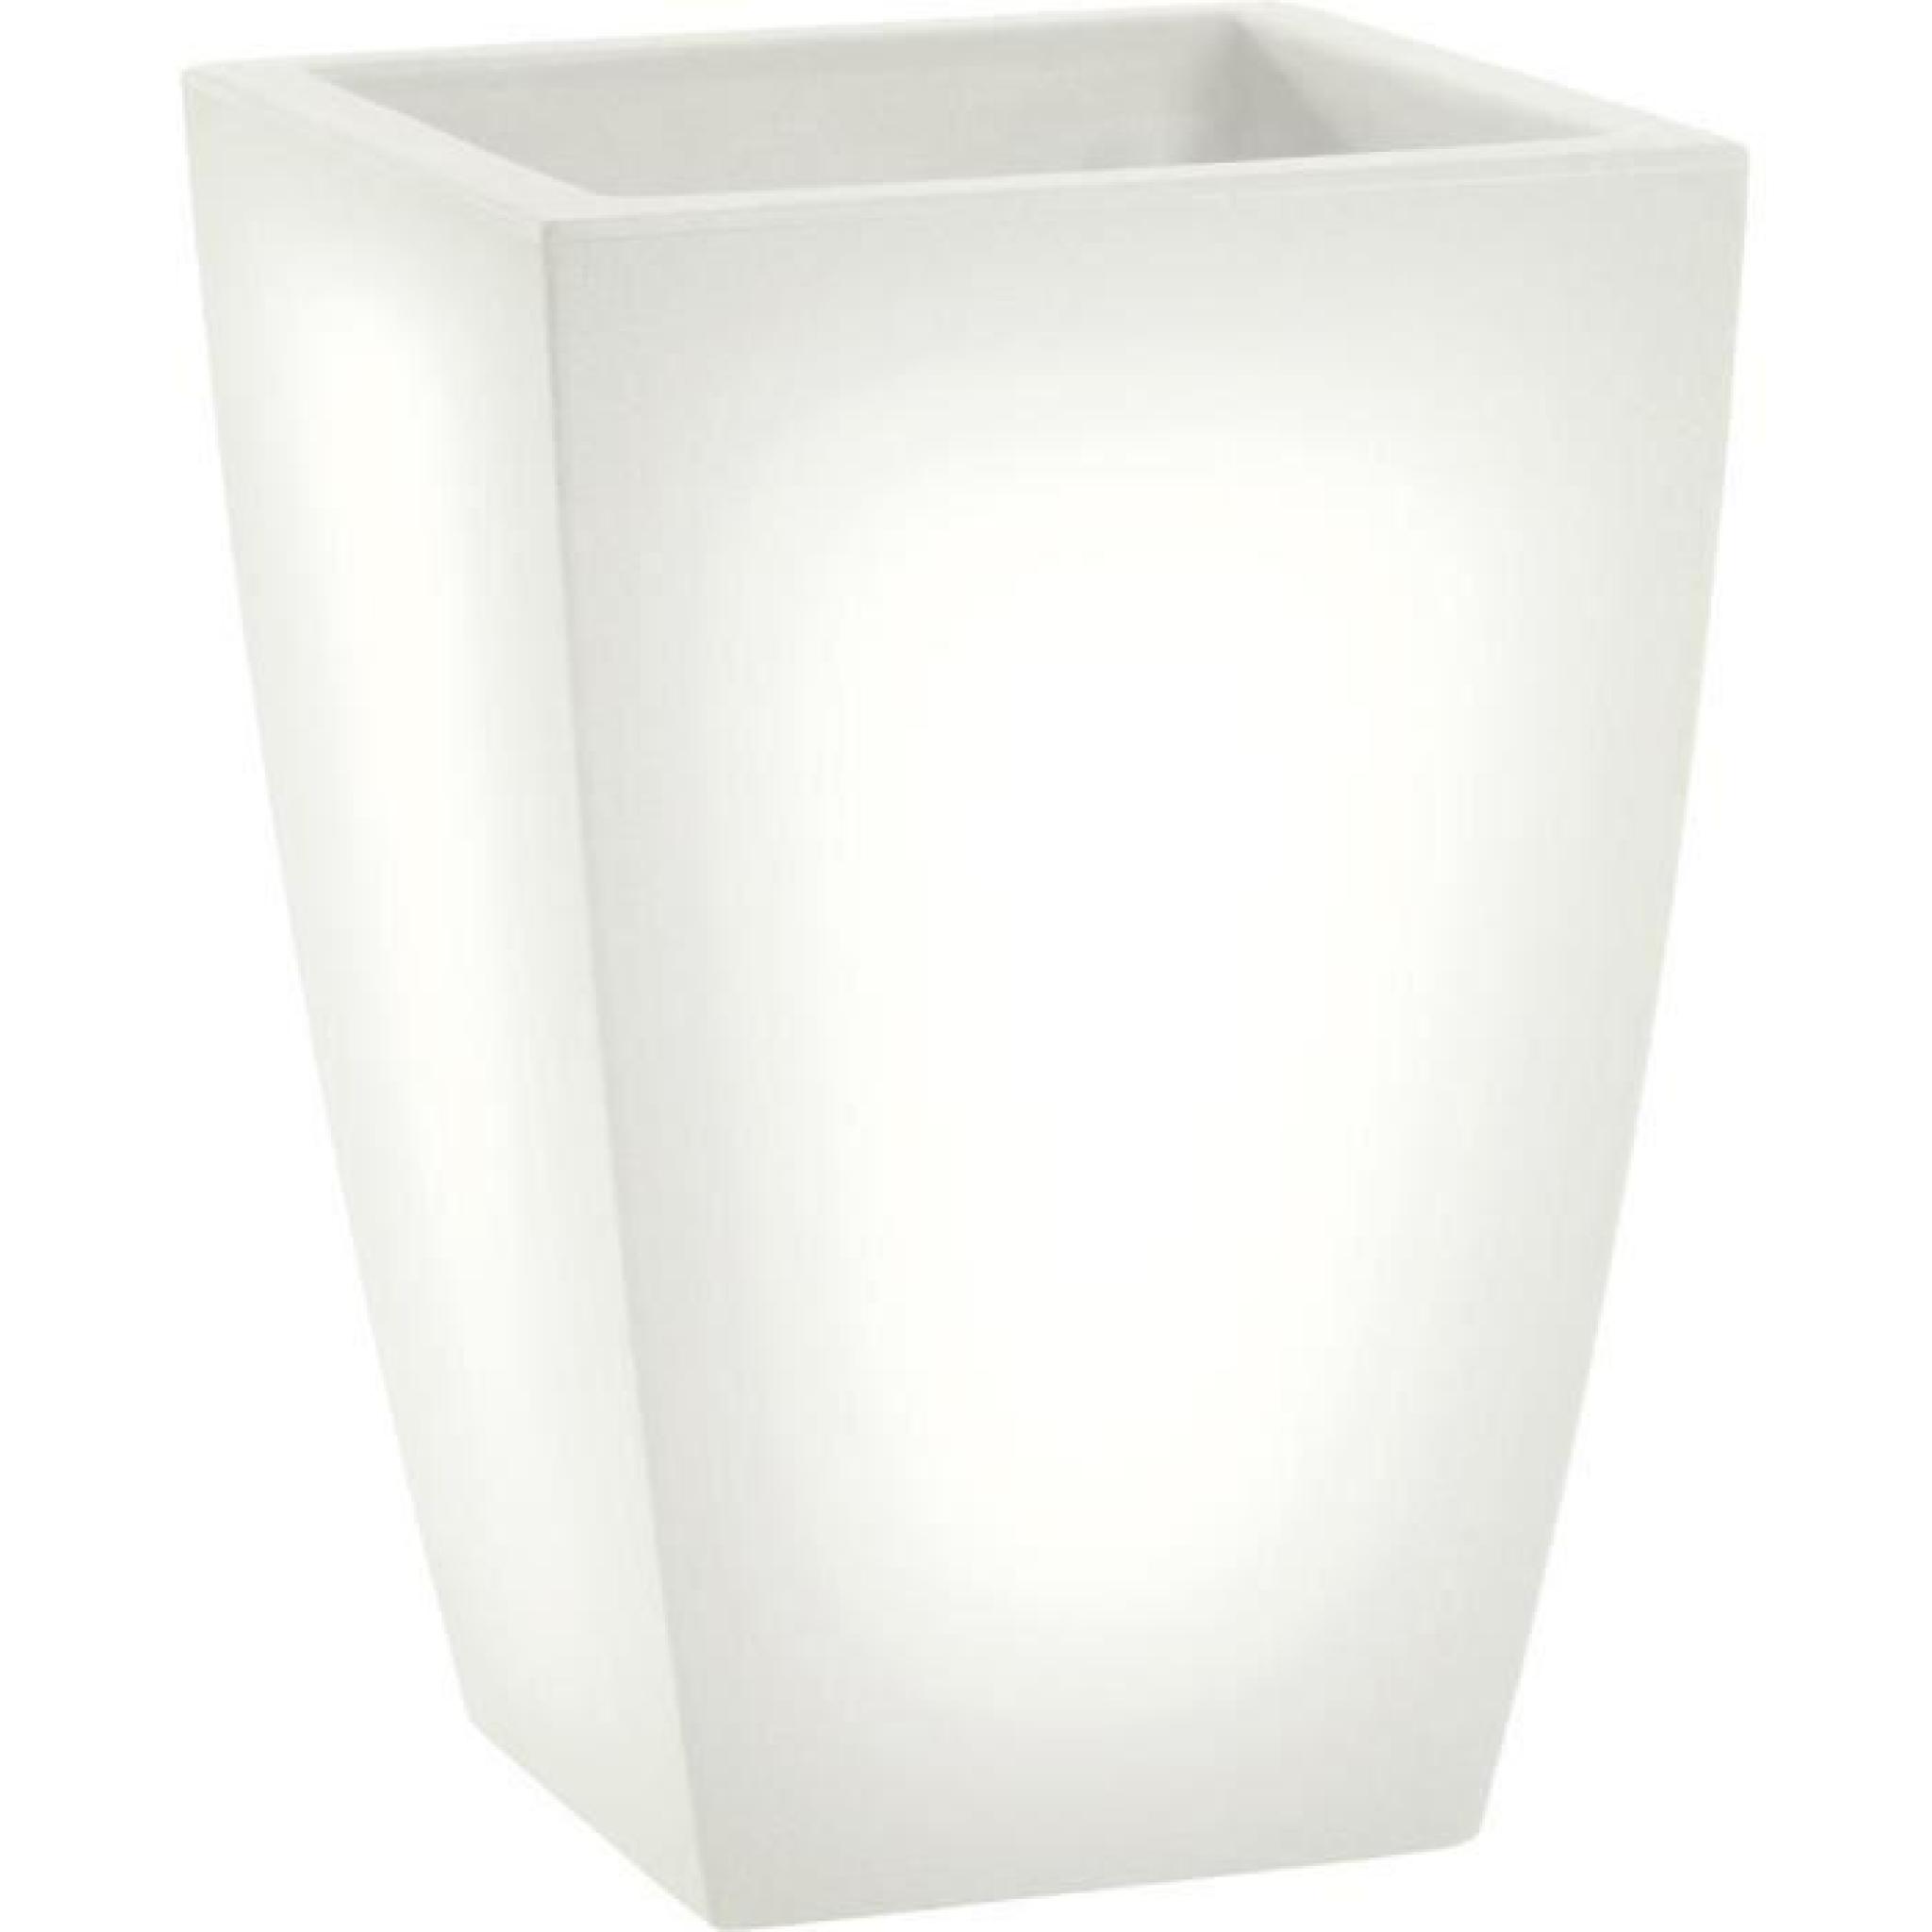 LED pot de fleurs lumineux, lumière blanc jour, l40 x h57 x l40 cm, fait de haute qualité polyéthylène